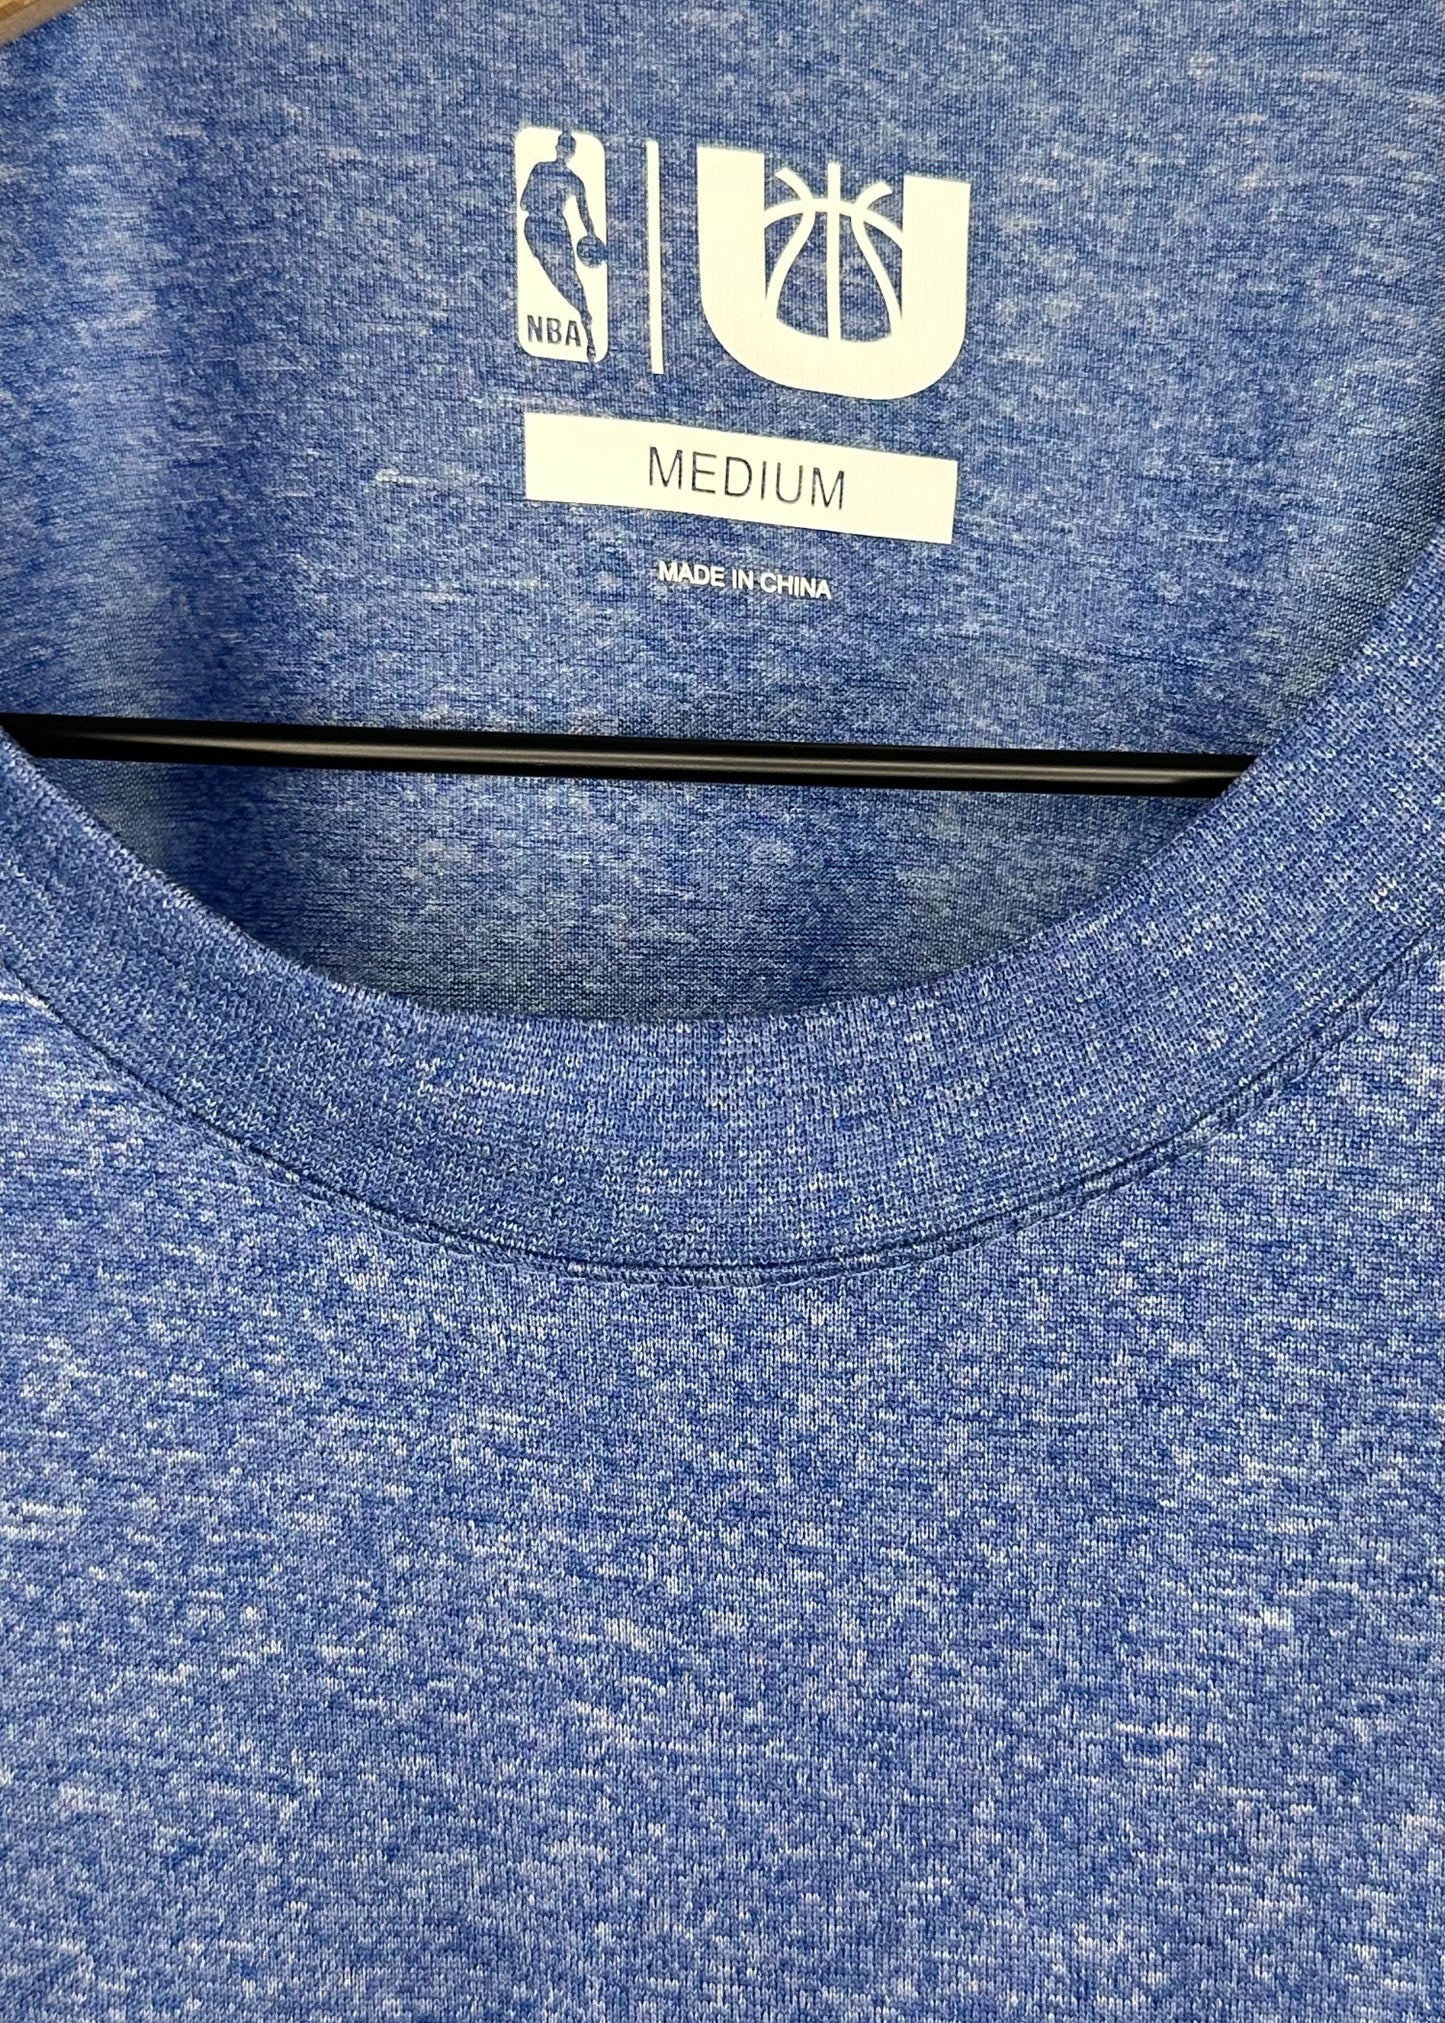 Blue Golden State Warriors Dri-Fit T-Shirt